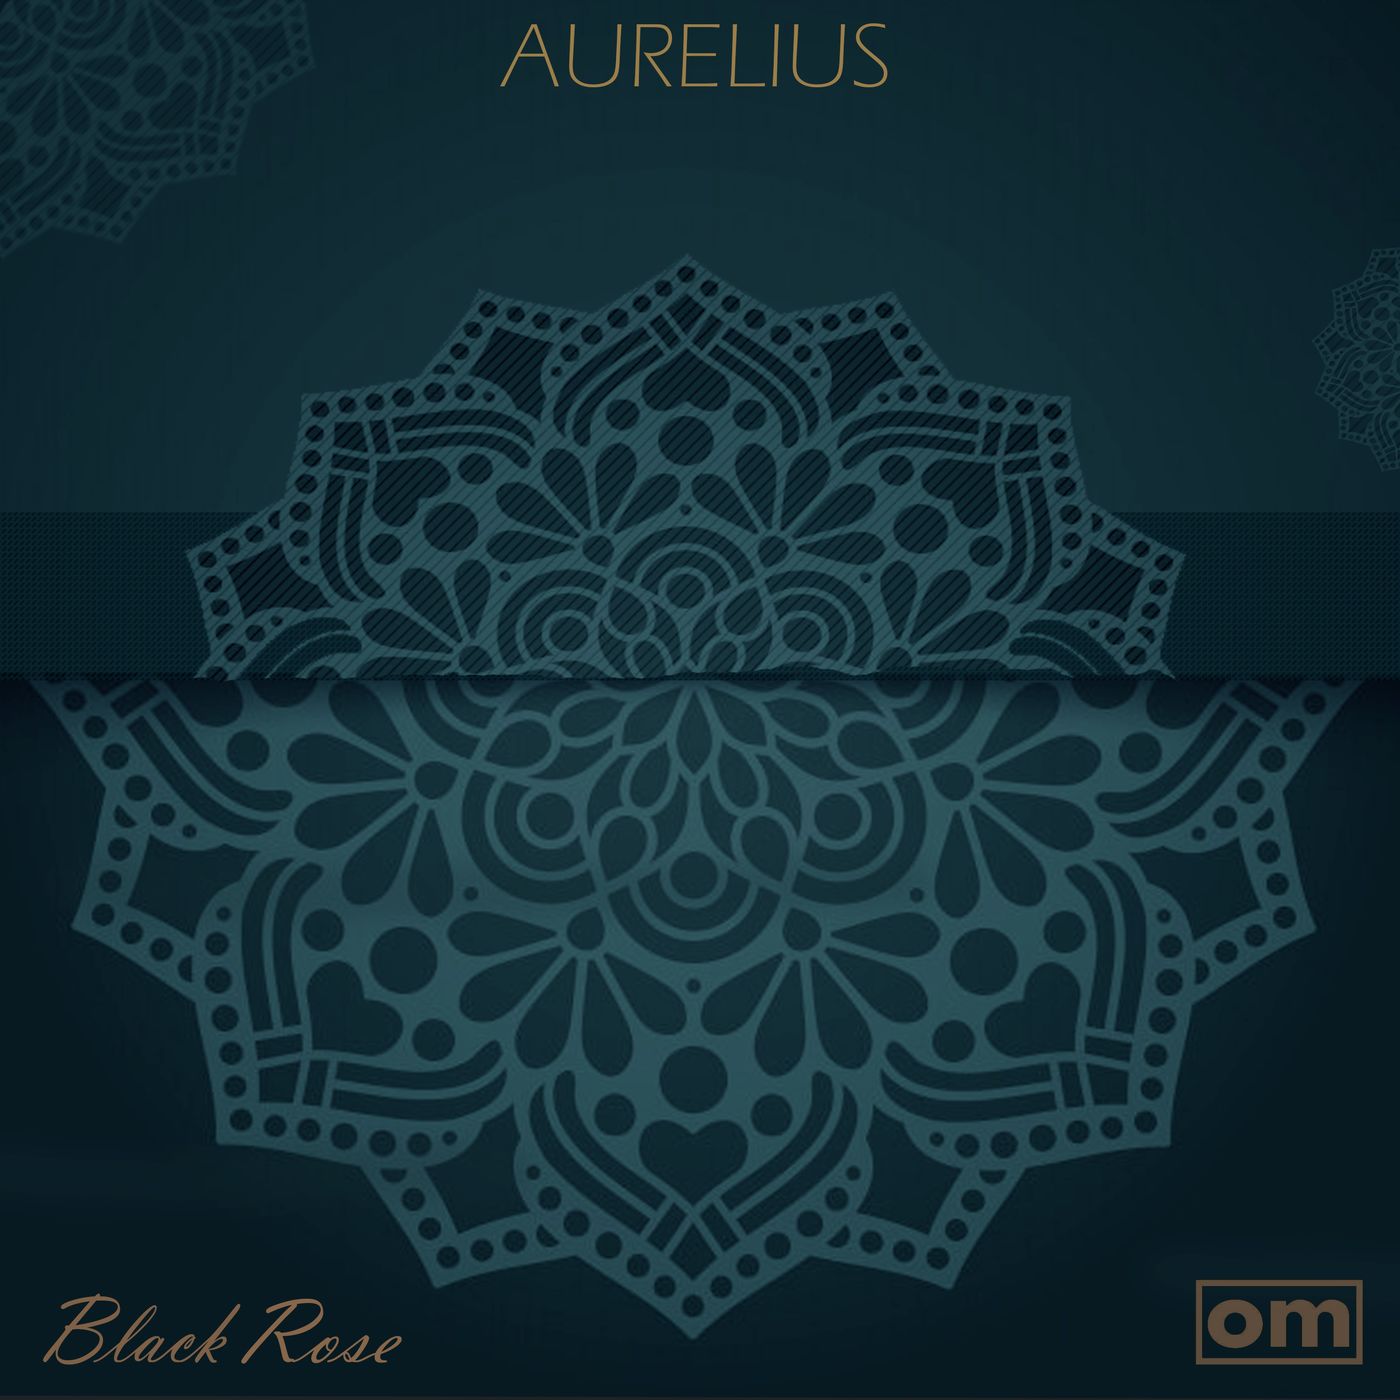 Aurelius - Black Rose / Orbit Music